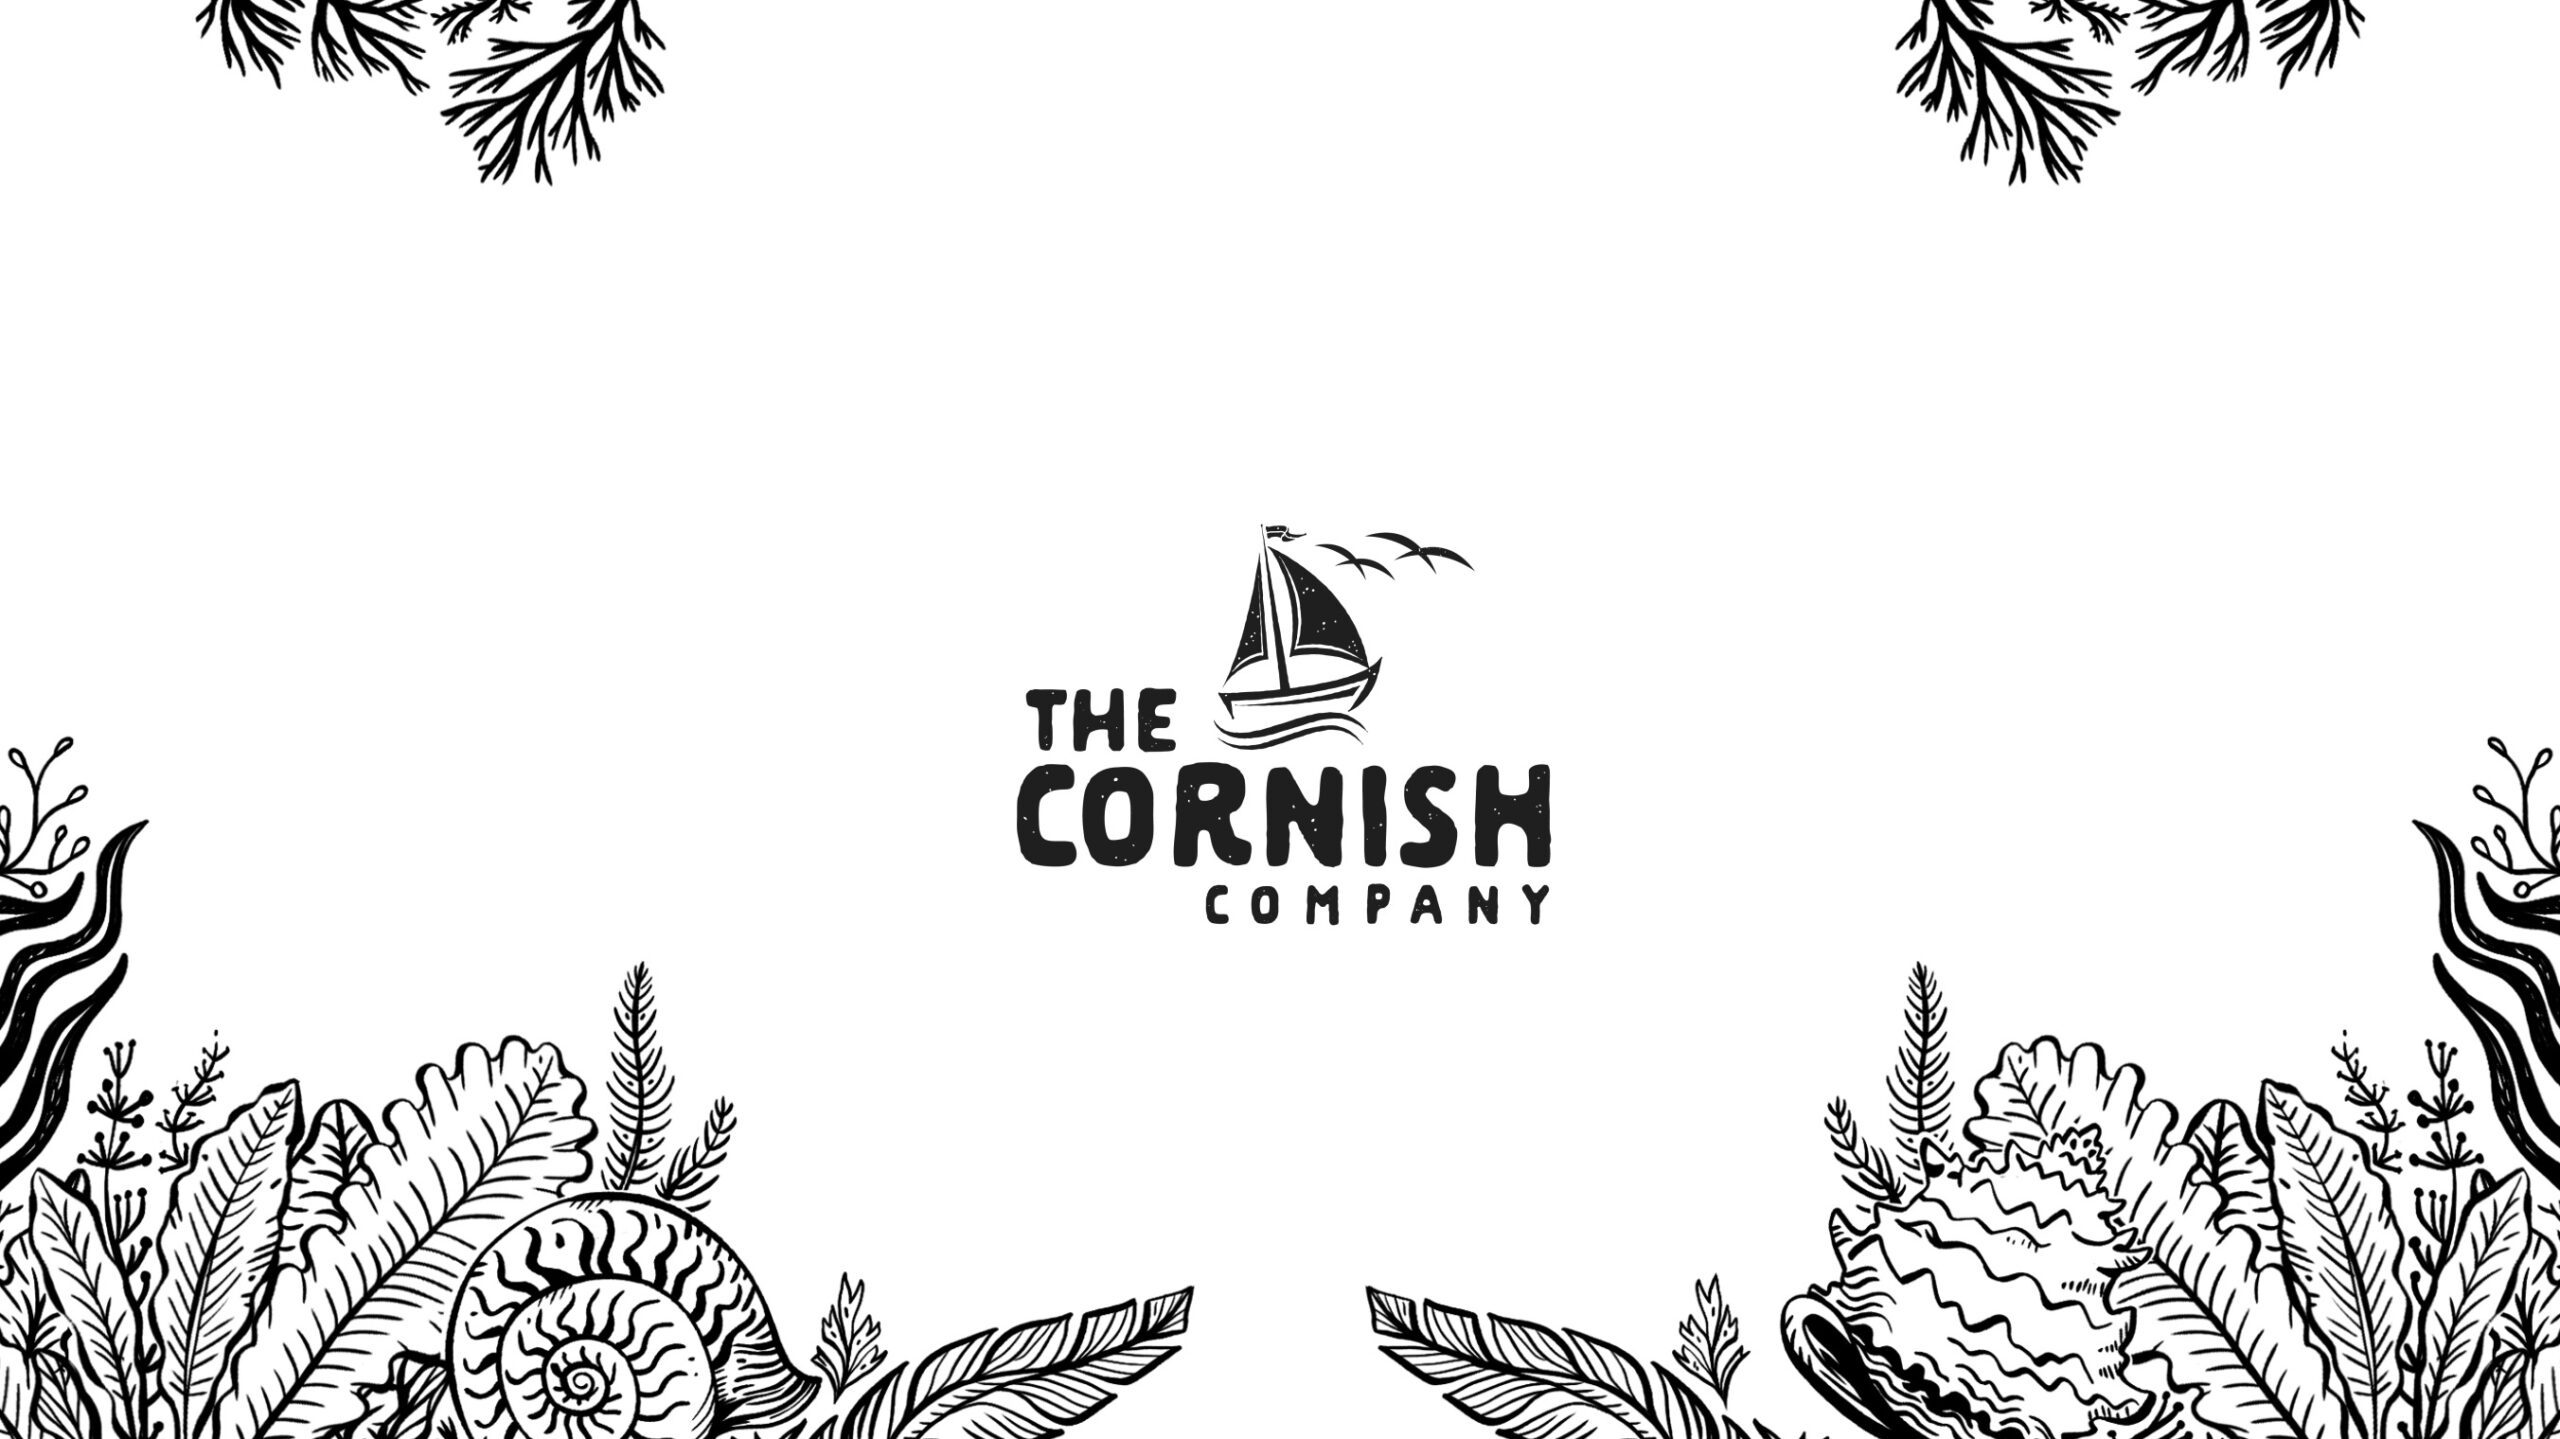 The Cornish Company Socials 45s.00 00 05 13.Still001 scaled